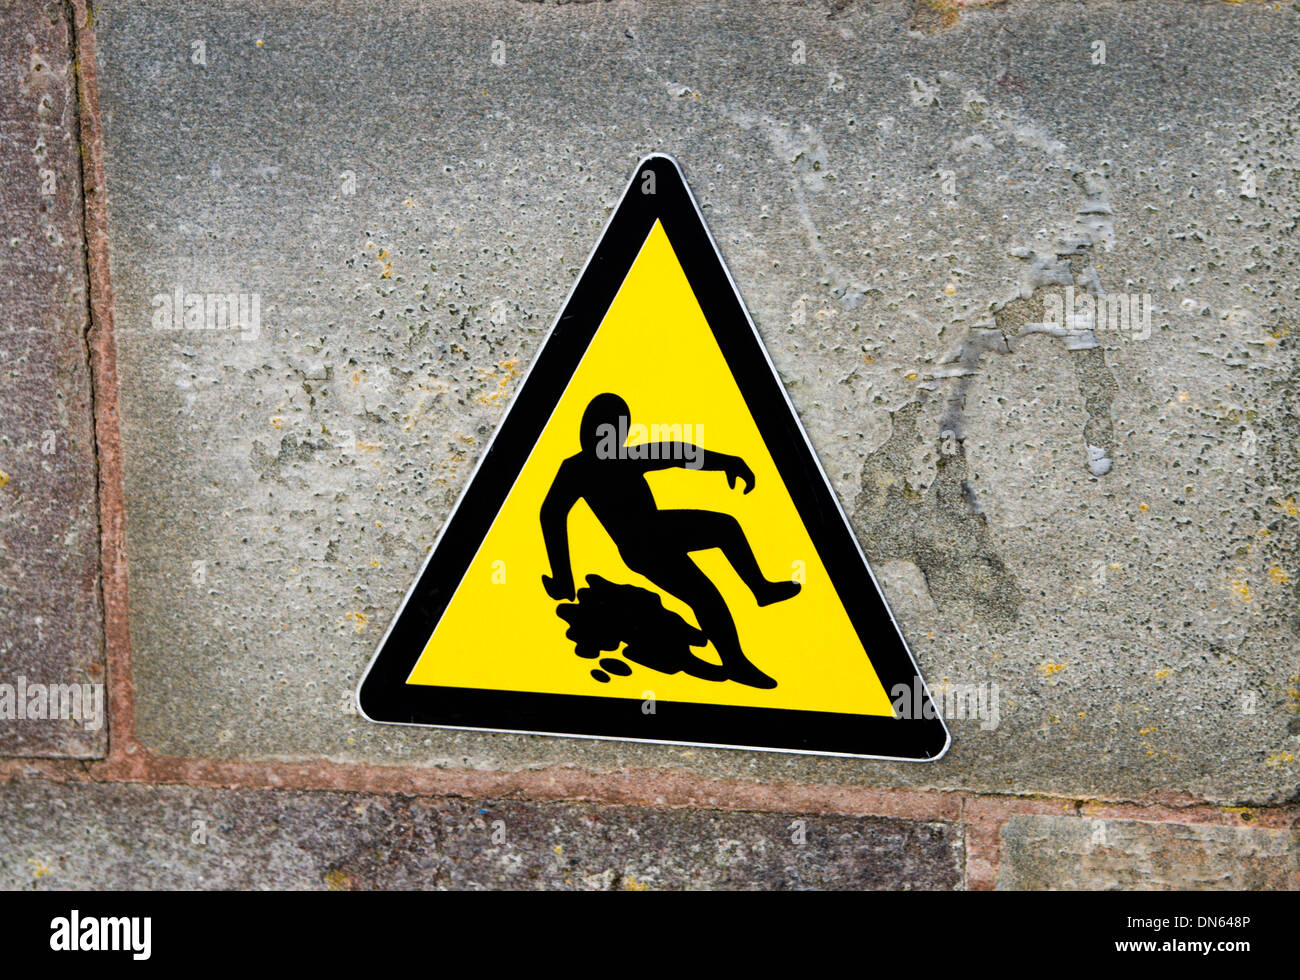 Panneau d'avertissement pour surface glissante, la baie de Cardiff, Pays de Galles. Banque D'Images